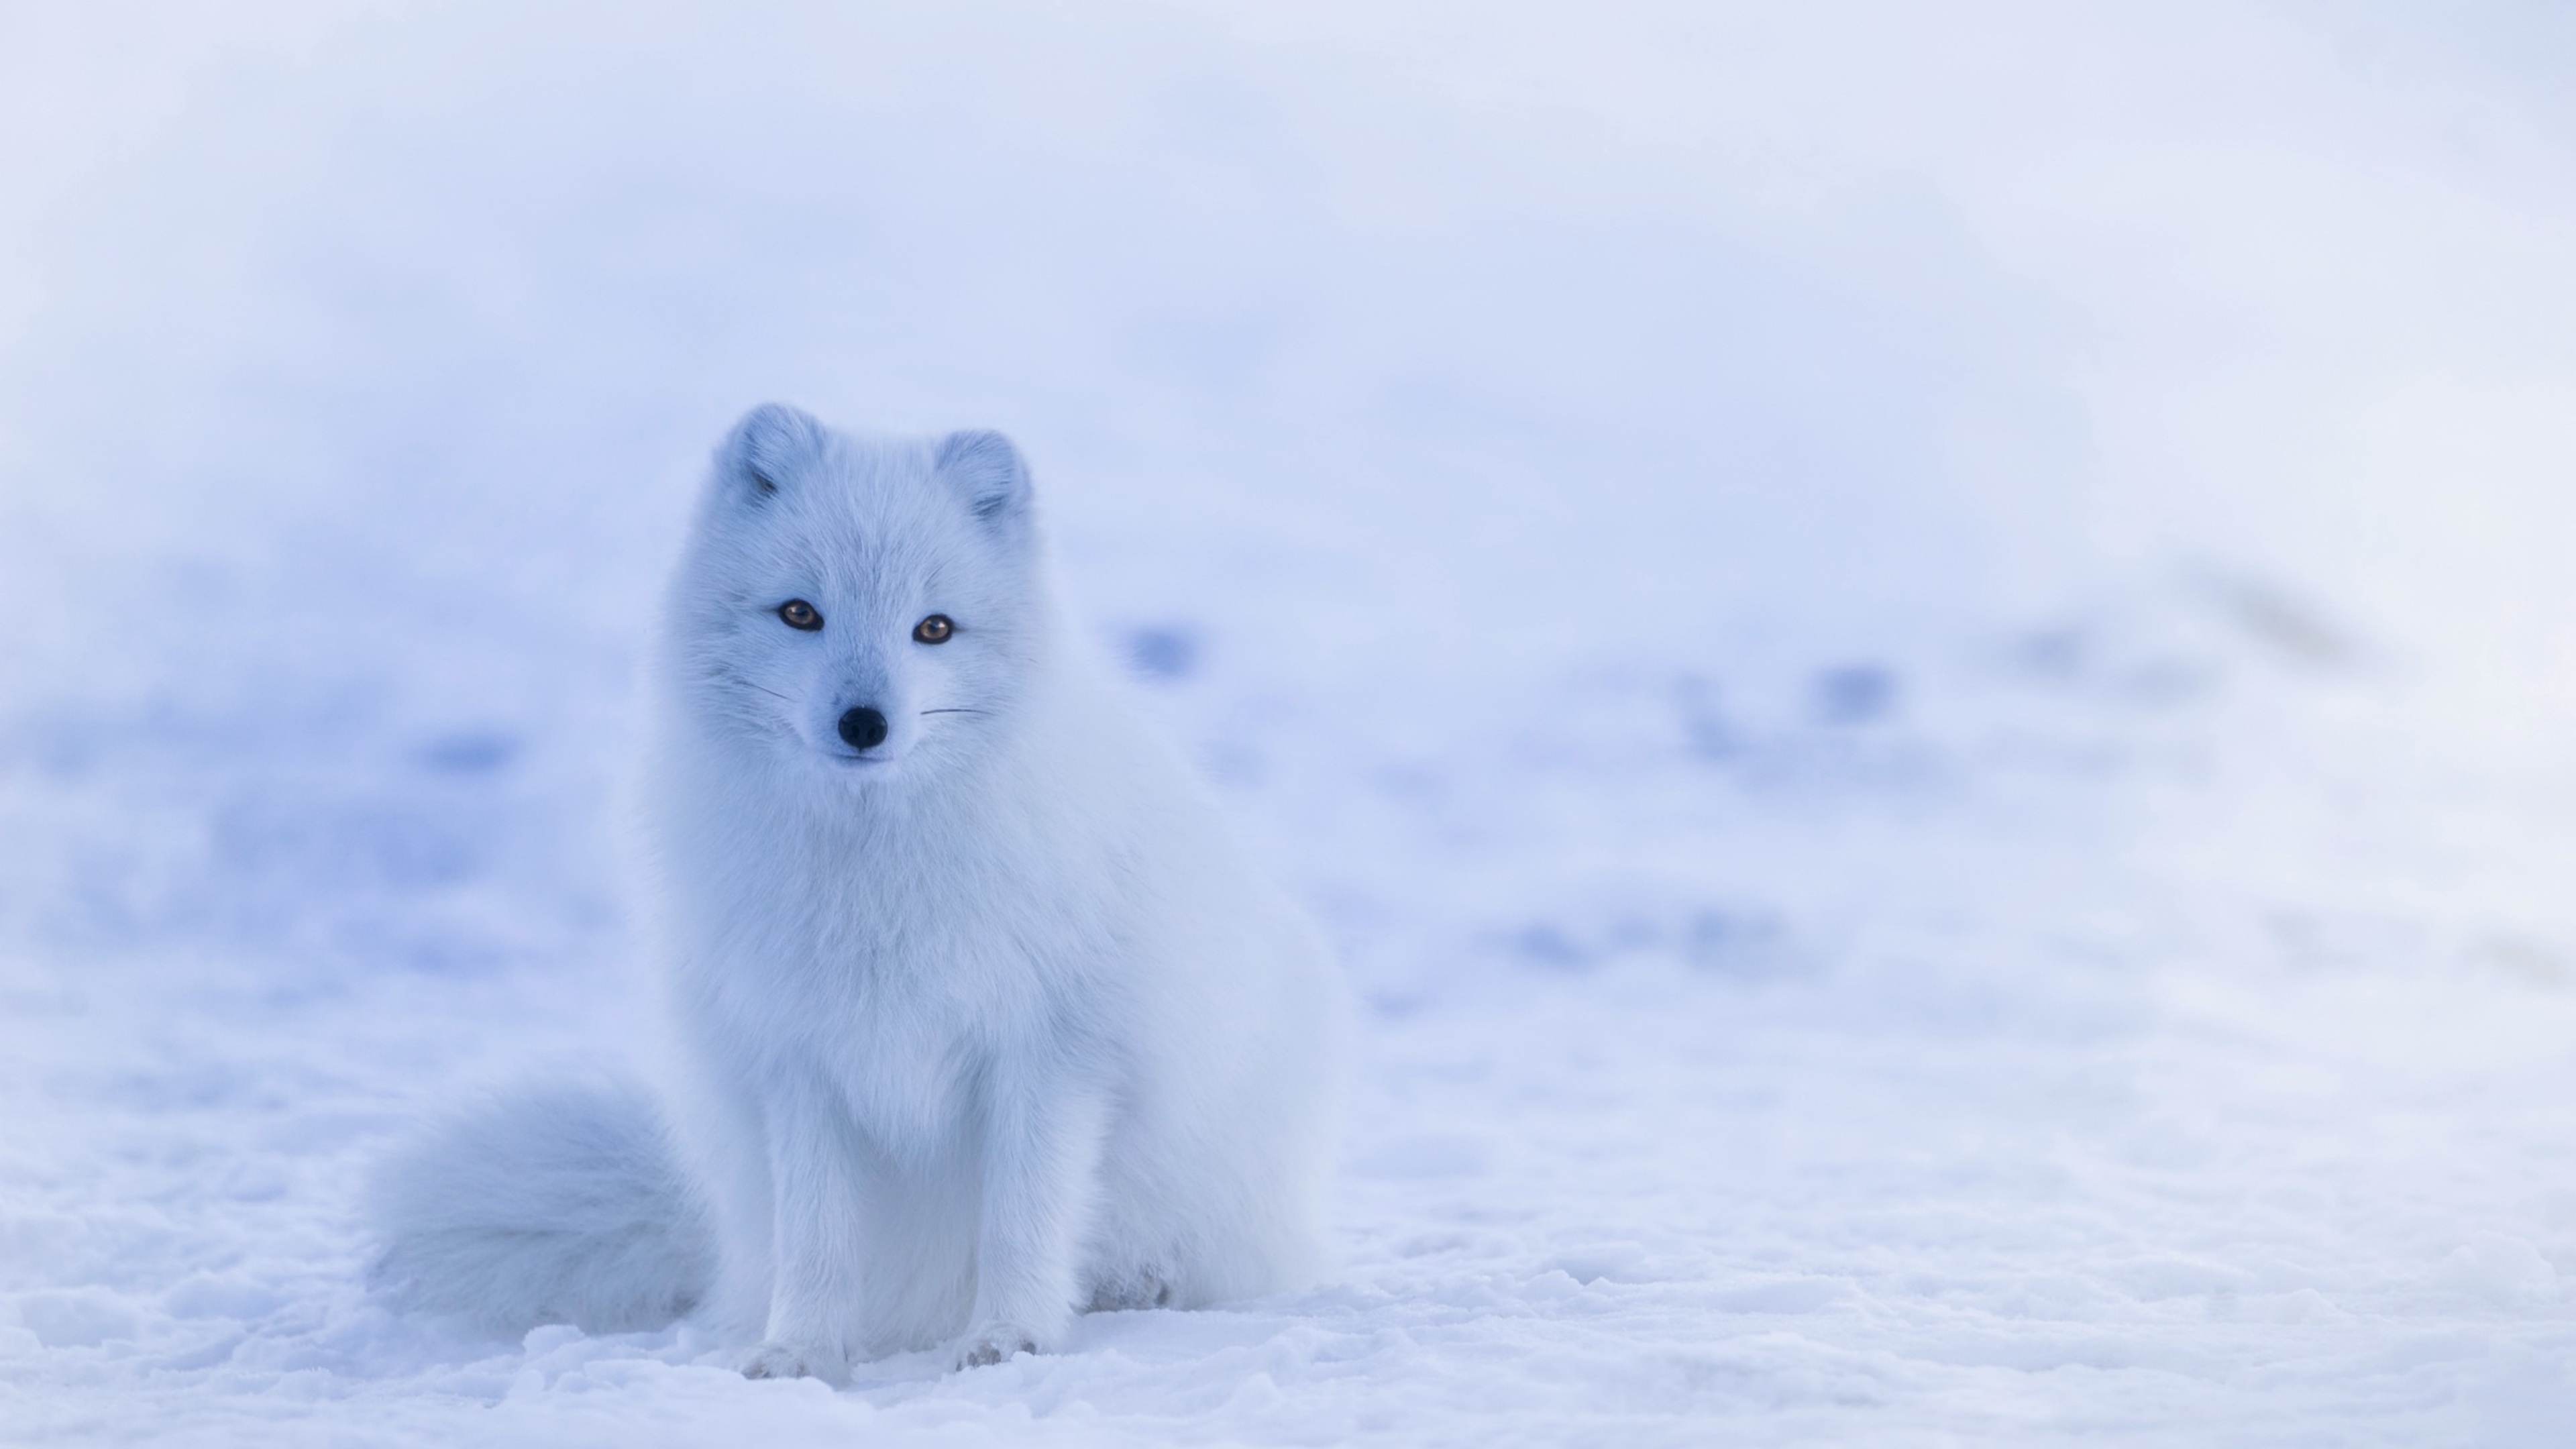 Arctic fox snow, 4K HD, Stunning wallpapers, Picturesque charm, 3840x2160 4K Desktop